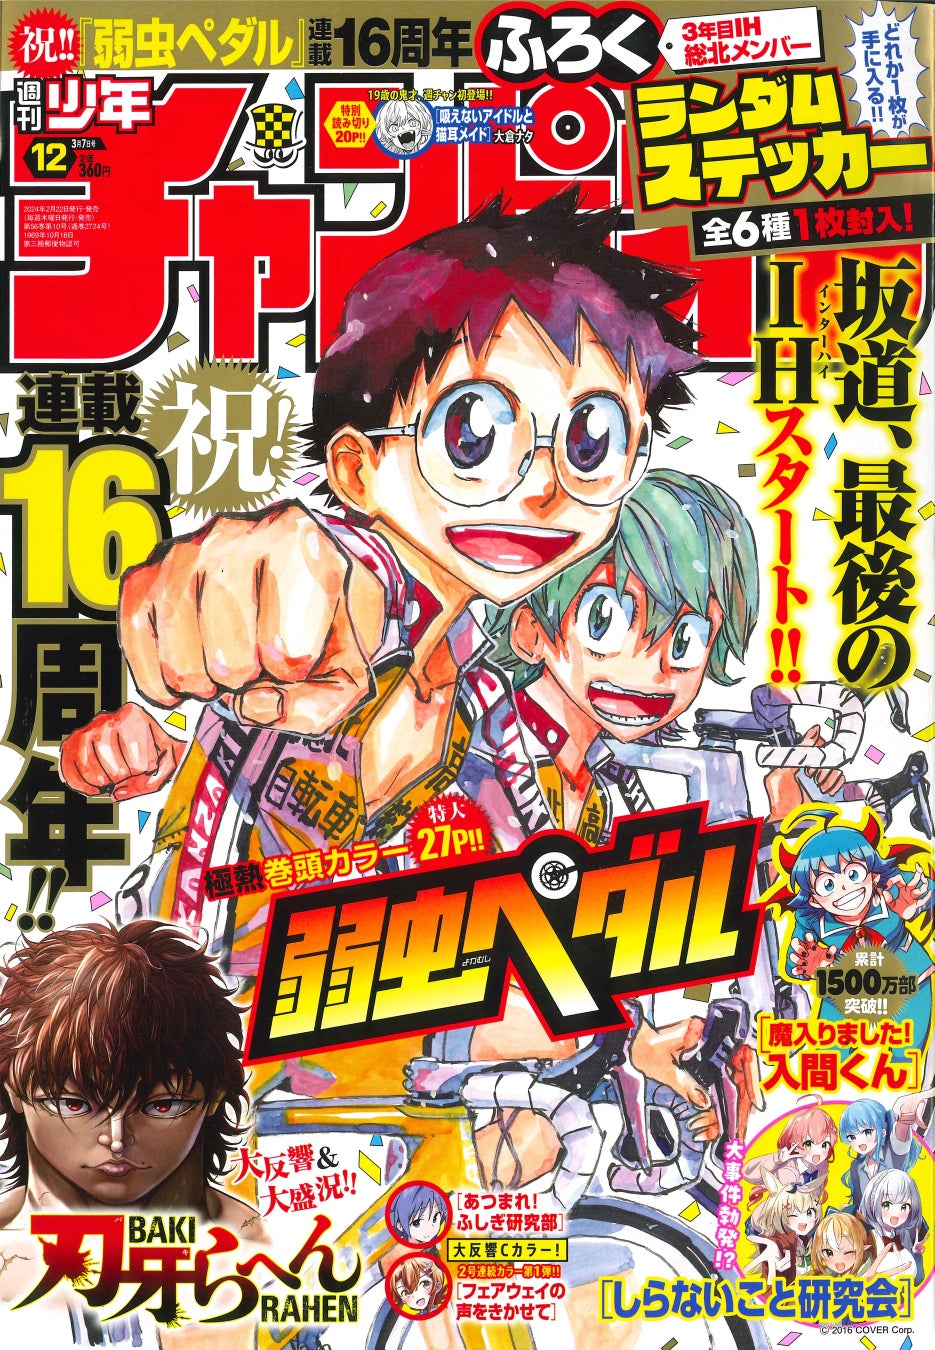 2月22日(木)発売の週刊少年チャンピオン12号は連載16周年を迎え 